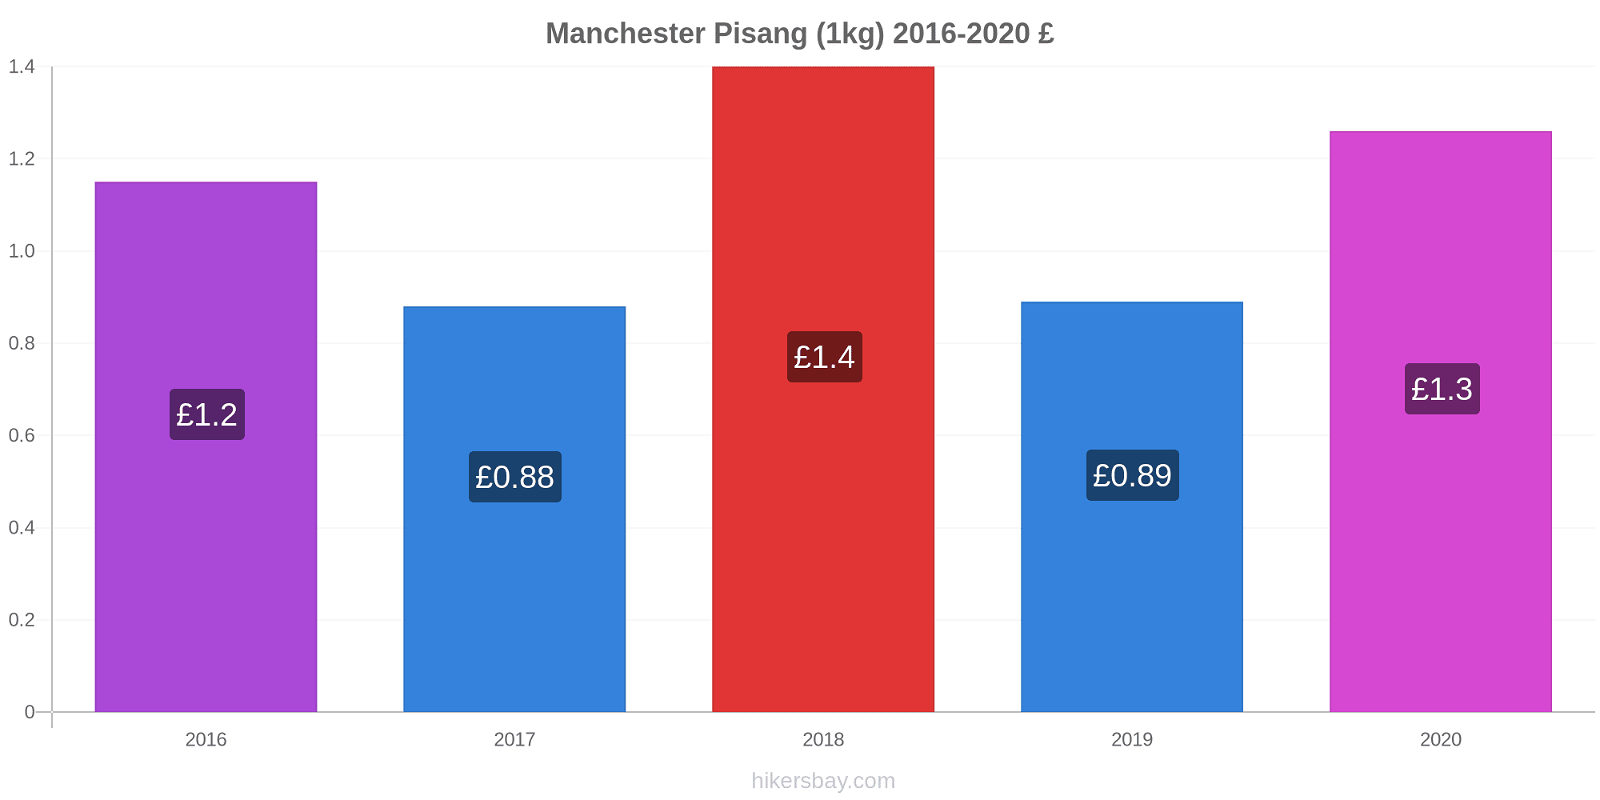 Manchester perubahan harga Pisang (1kg) hikersbay.com